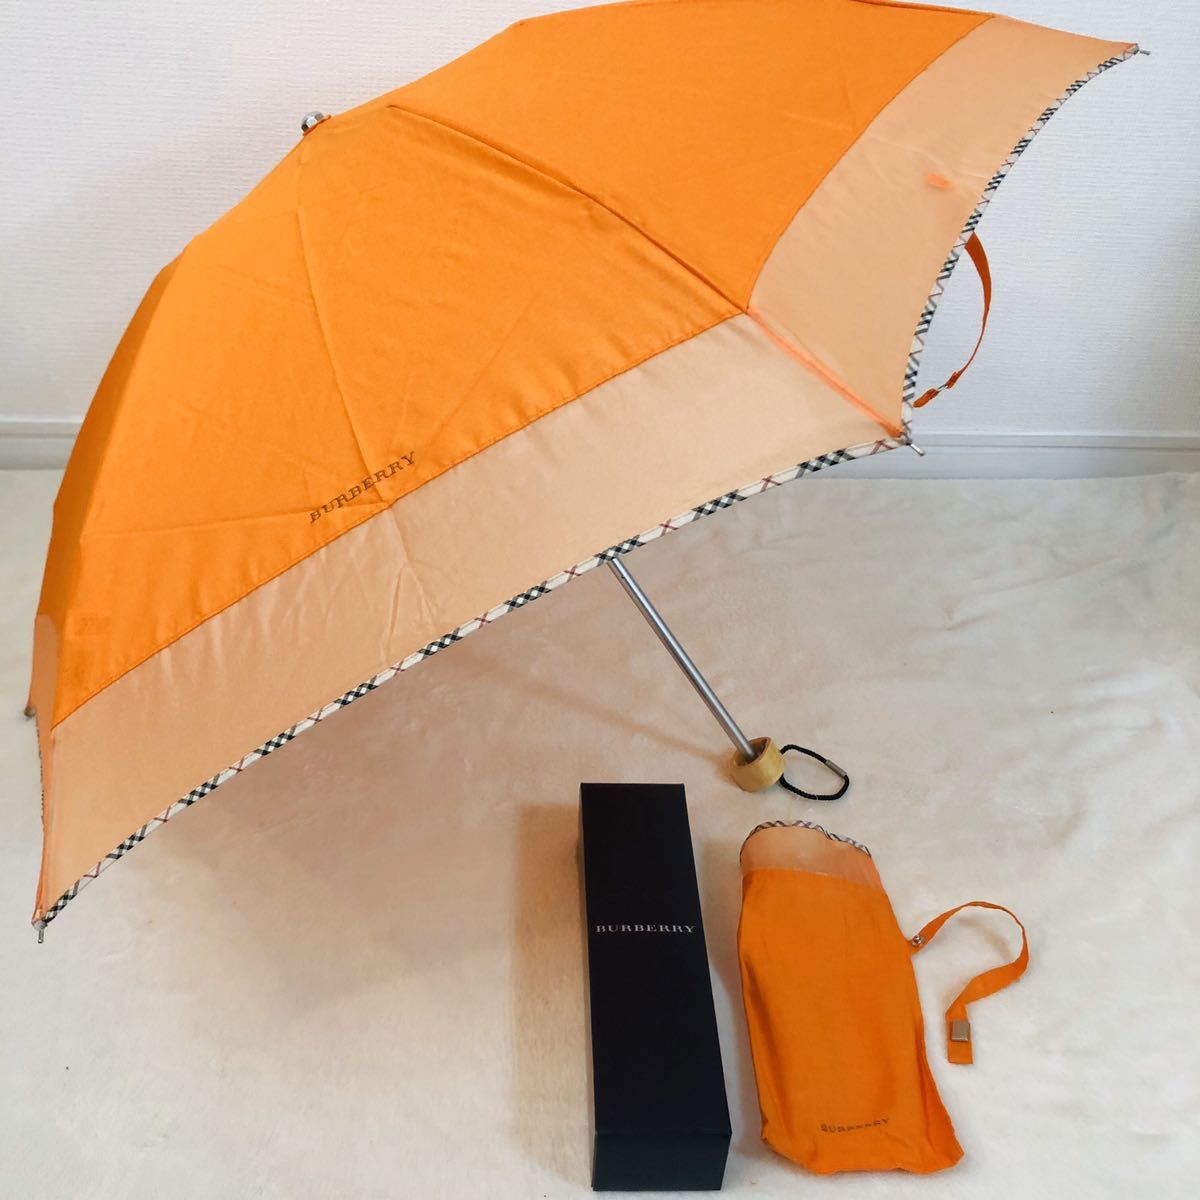  новый товар /BURBERRY/ складной зонт / стандартный товар / Burberry /Burberrys/noba проверка / не использовался / шланг Mark / зонт от дождя / складной зонт / orange / женский / женский 